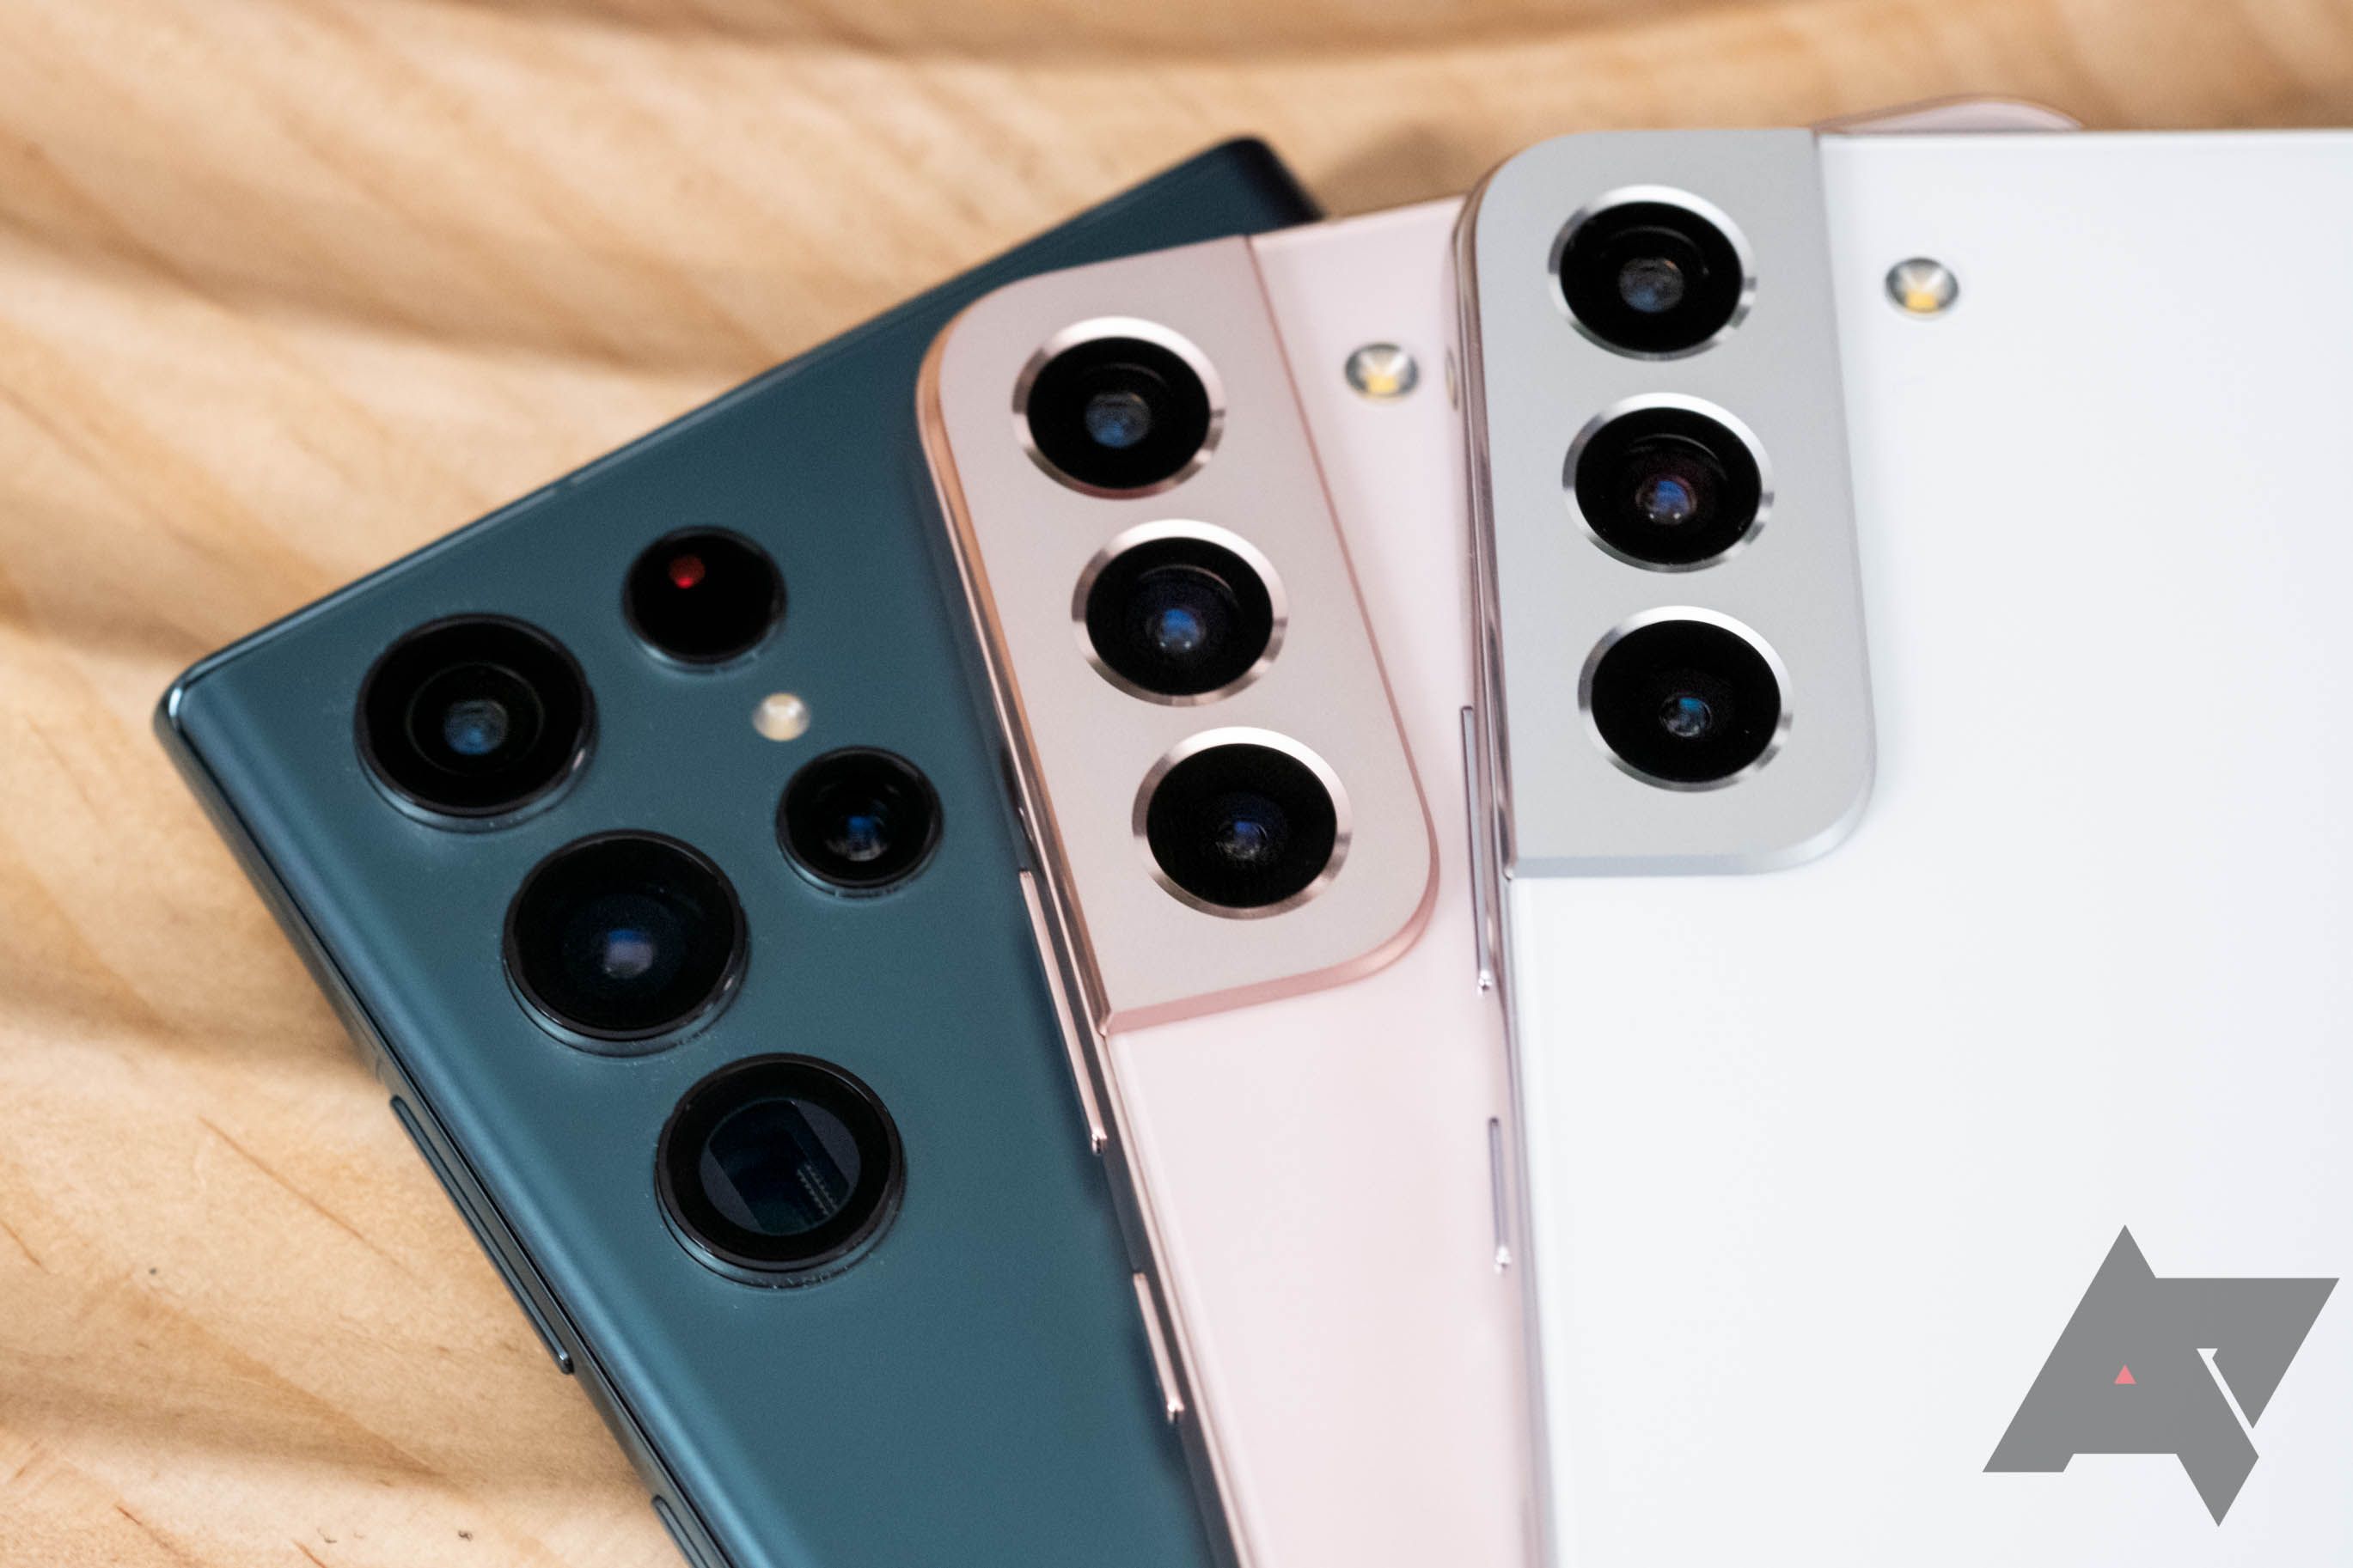 Três smartphones Samsung Galaxy, o S22 Ultra em verde, o S22 Plus em ouro rosa e o S22 em Phantom White, estão empilhados uns sobre os outros.